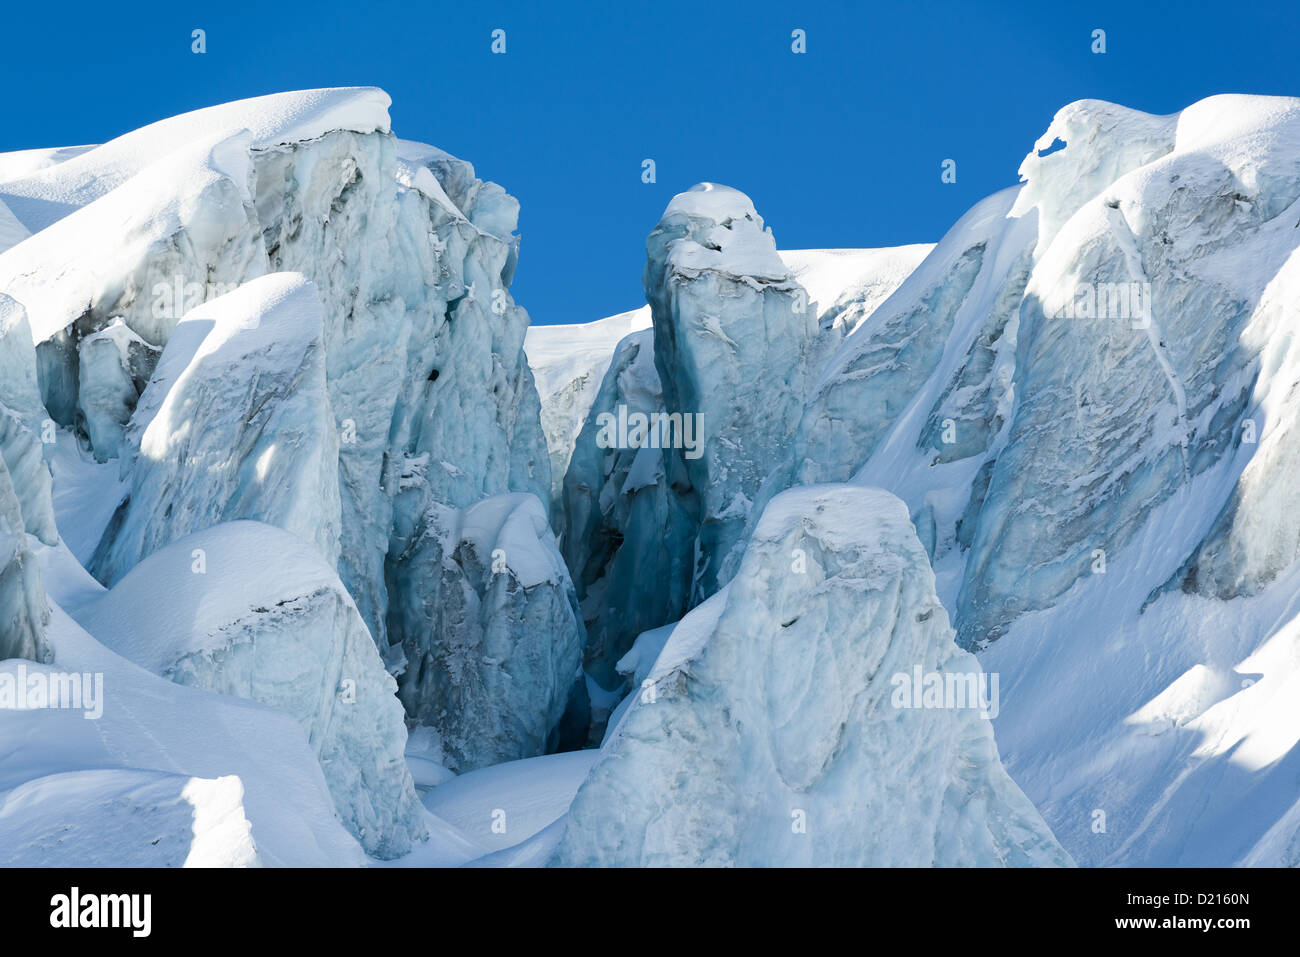 Crevasse glaciaire et structures de glace dans un glacier au-dessus de Saas-Fee, Valais, Suisse Banque D'Images